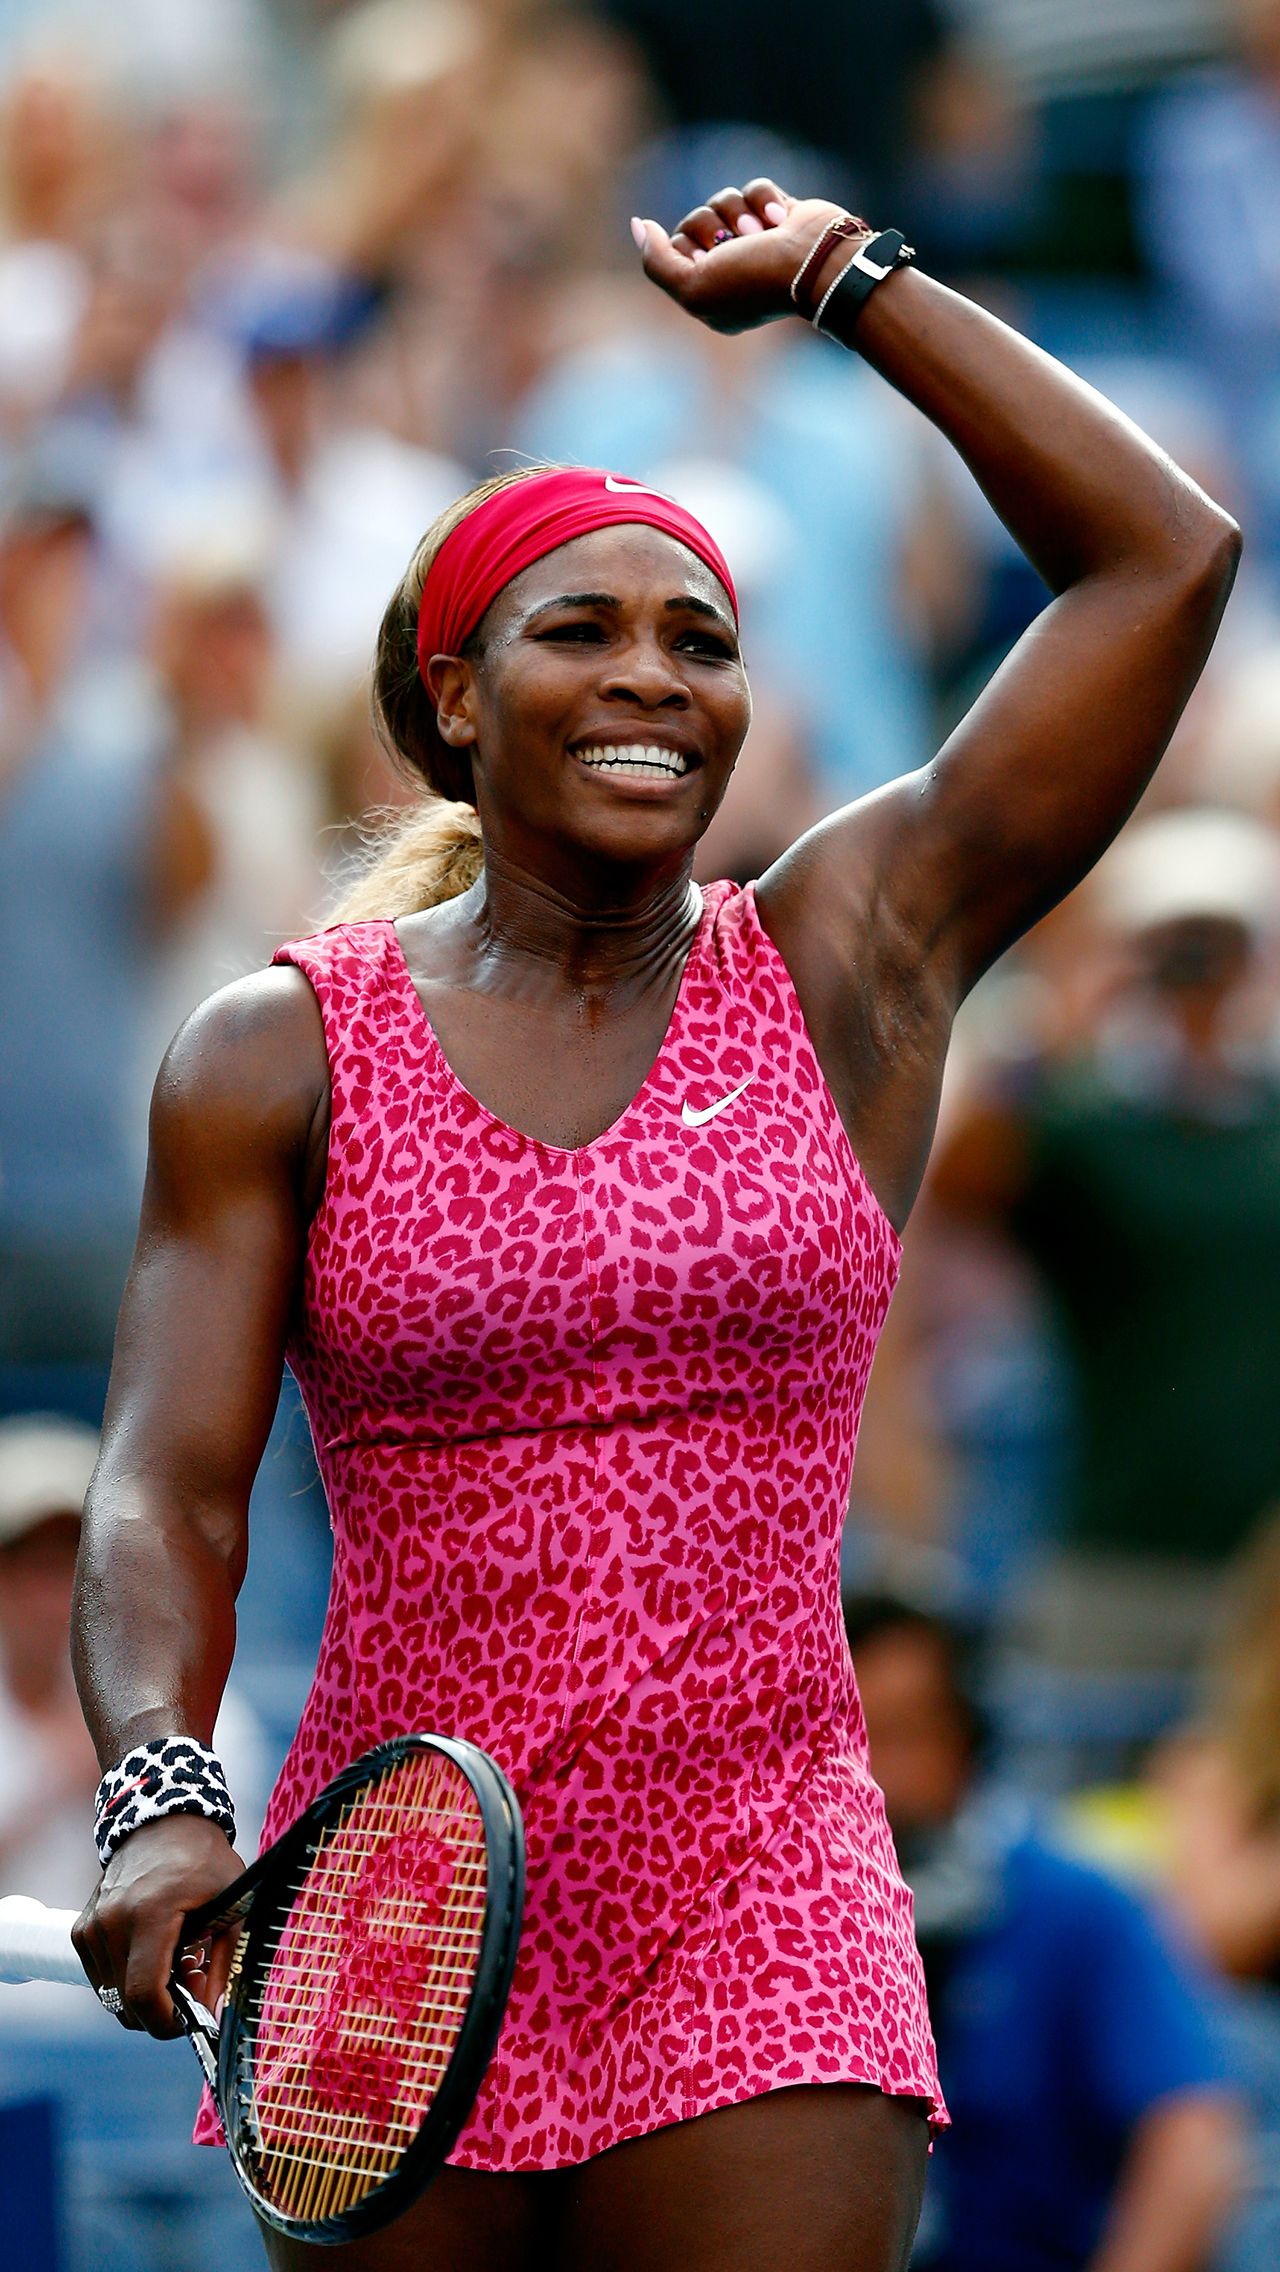 А вот леопардовый принт на розовом платье хорошо играть в теннис не мешает: в таком платье Серена играла на US Open в 2014-м и взяла титул.